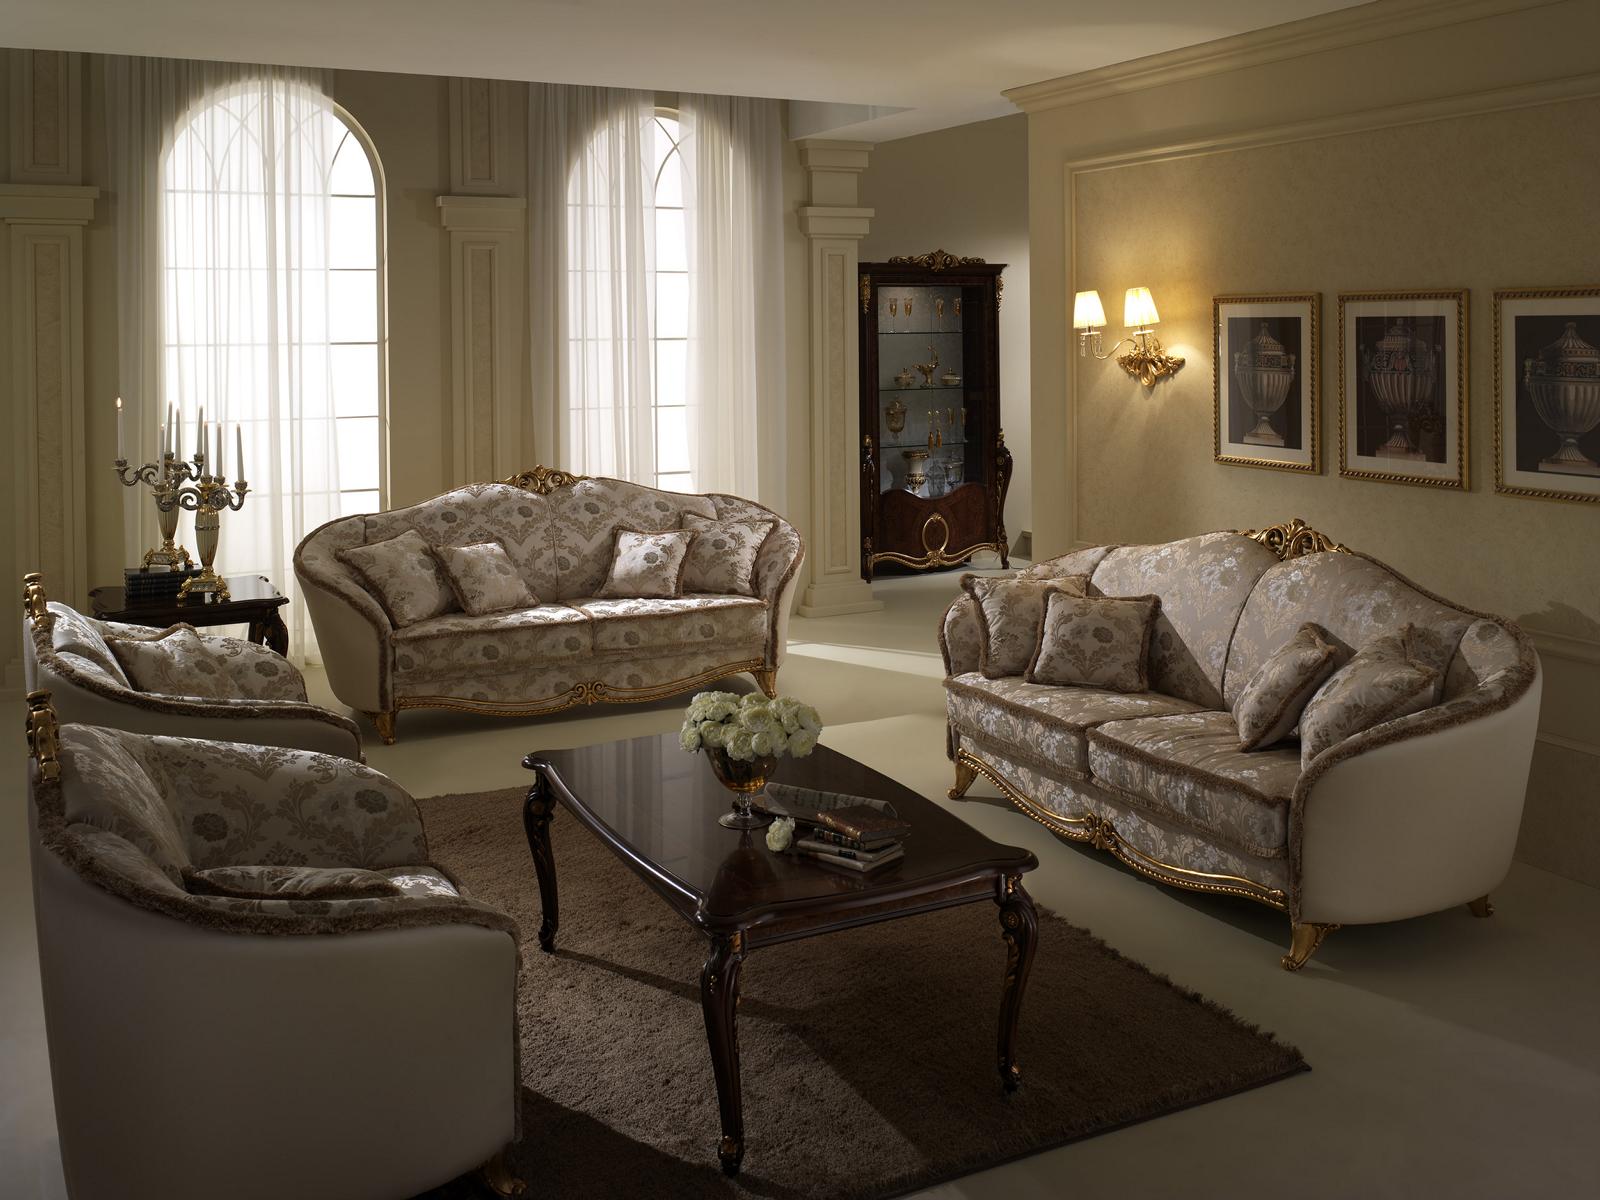 Luxus Klasse 2+1+1 Italienische Möbel Sofagarnitur Couch Sofa arredoclassic